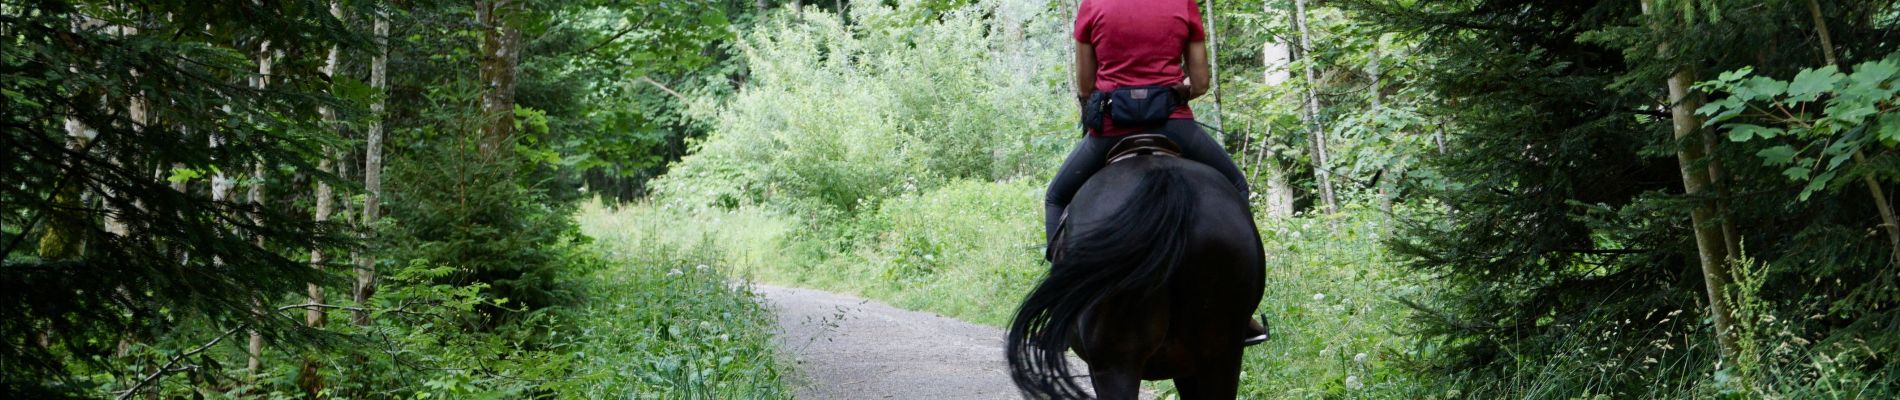 Trail Equestrian Gesves - H - Photo